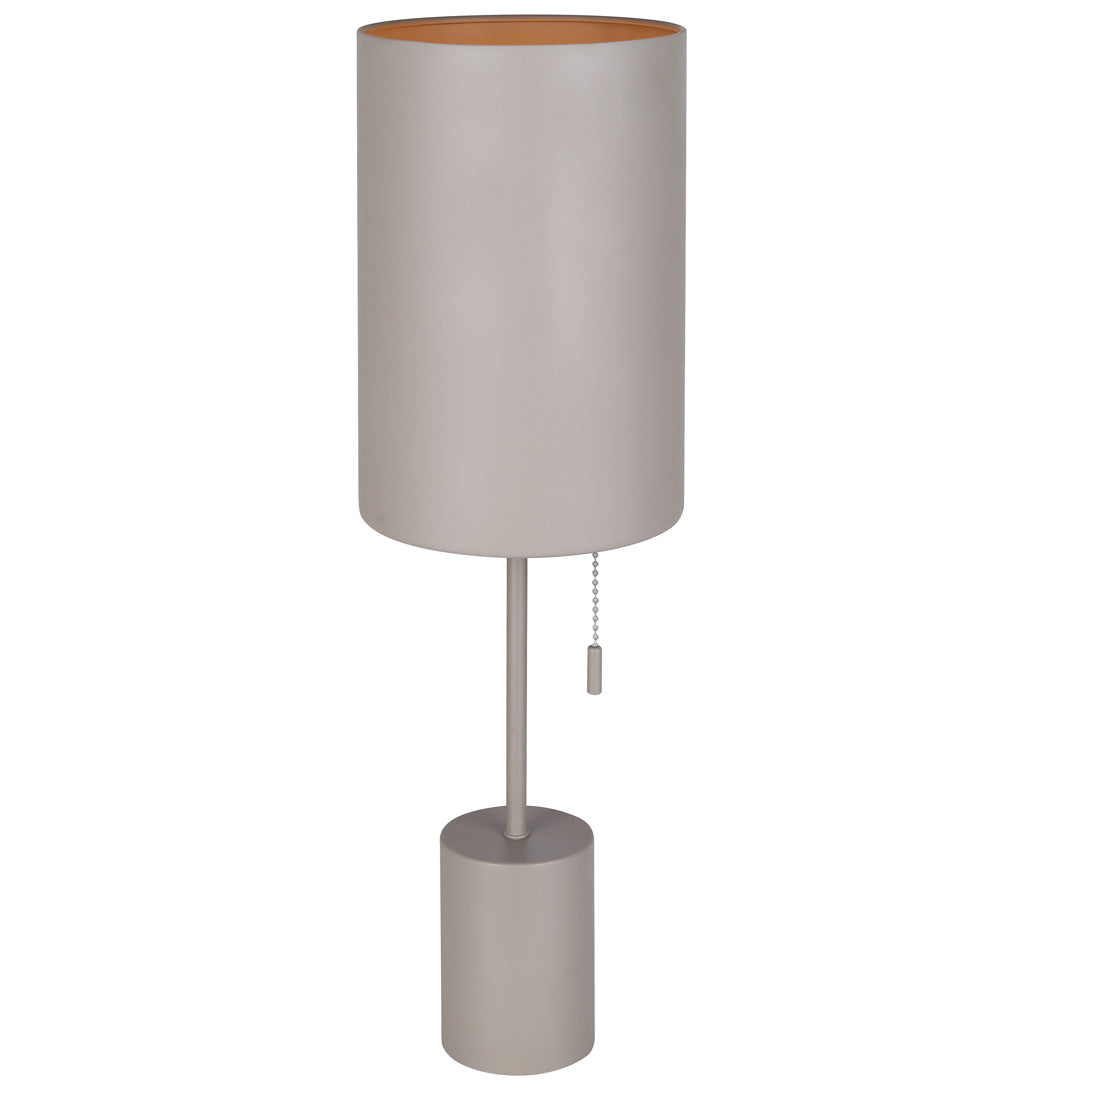 FLINT Lampe sur table Gris - ITL1164A23GY | CANARM